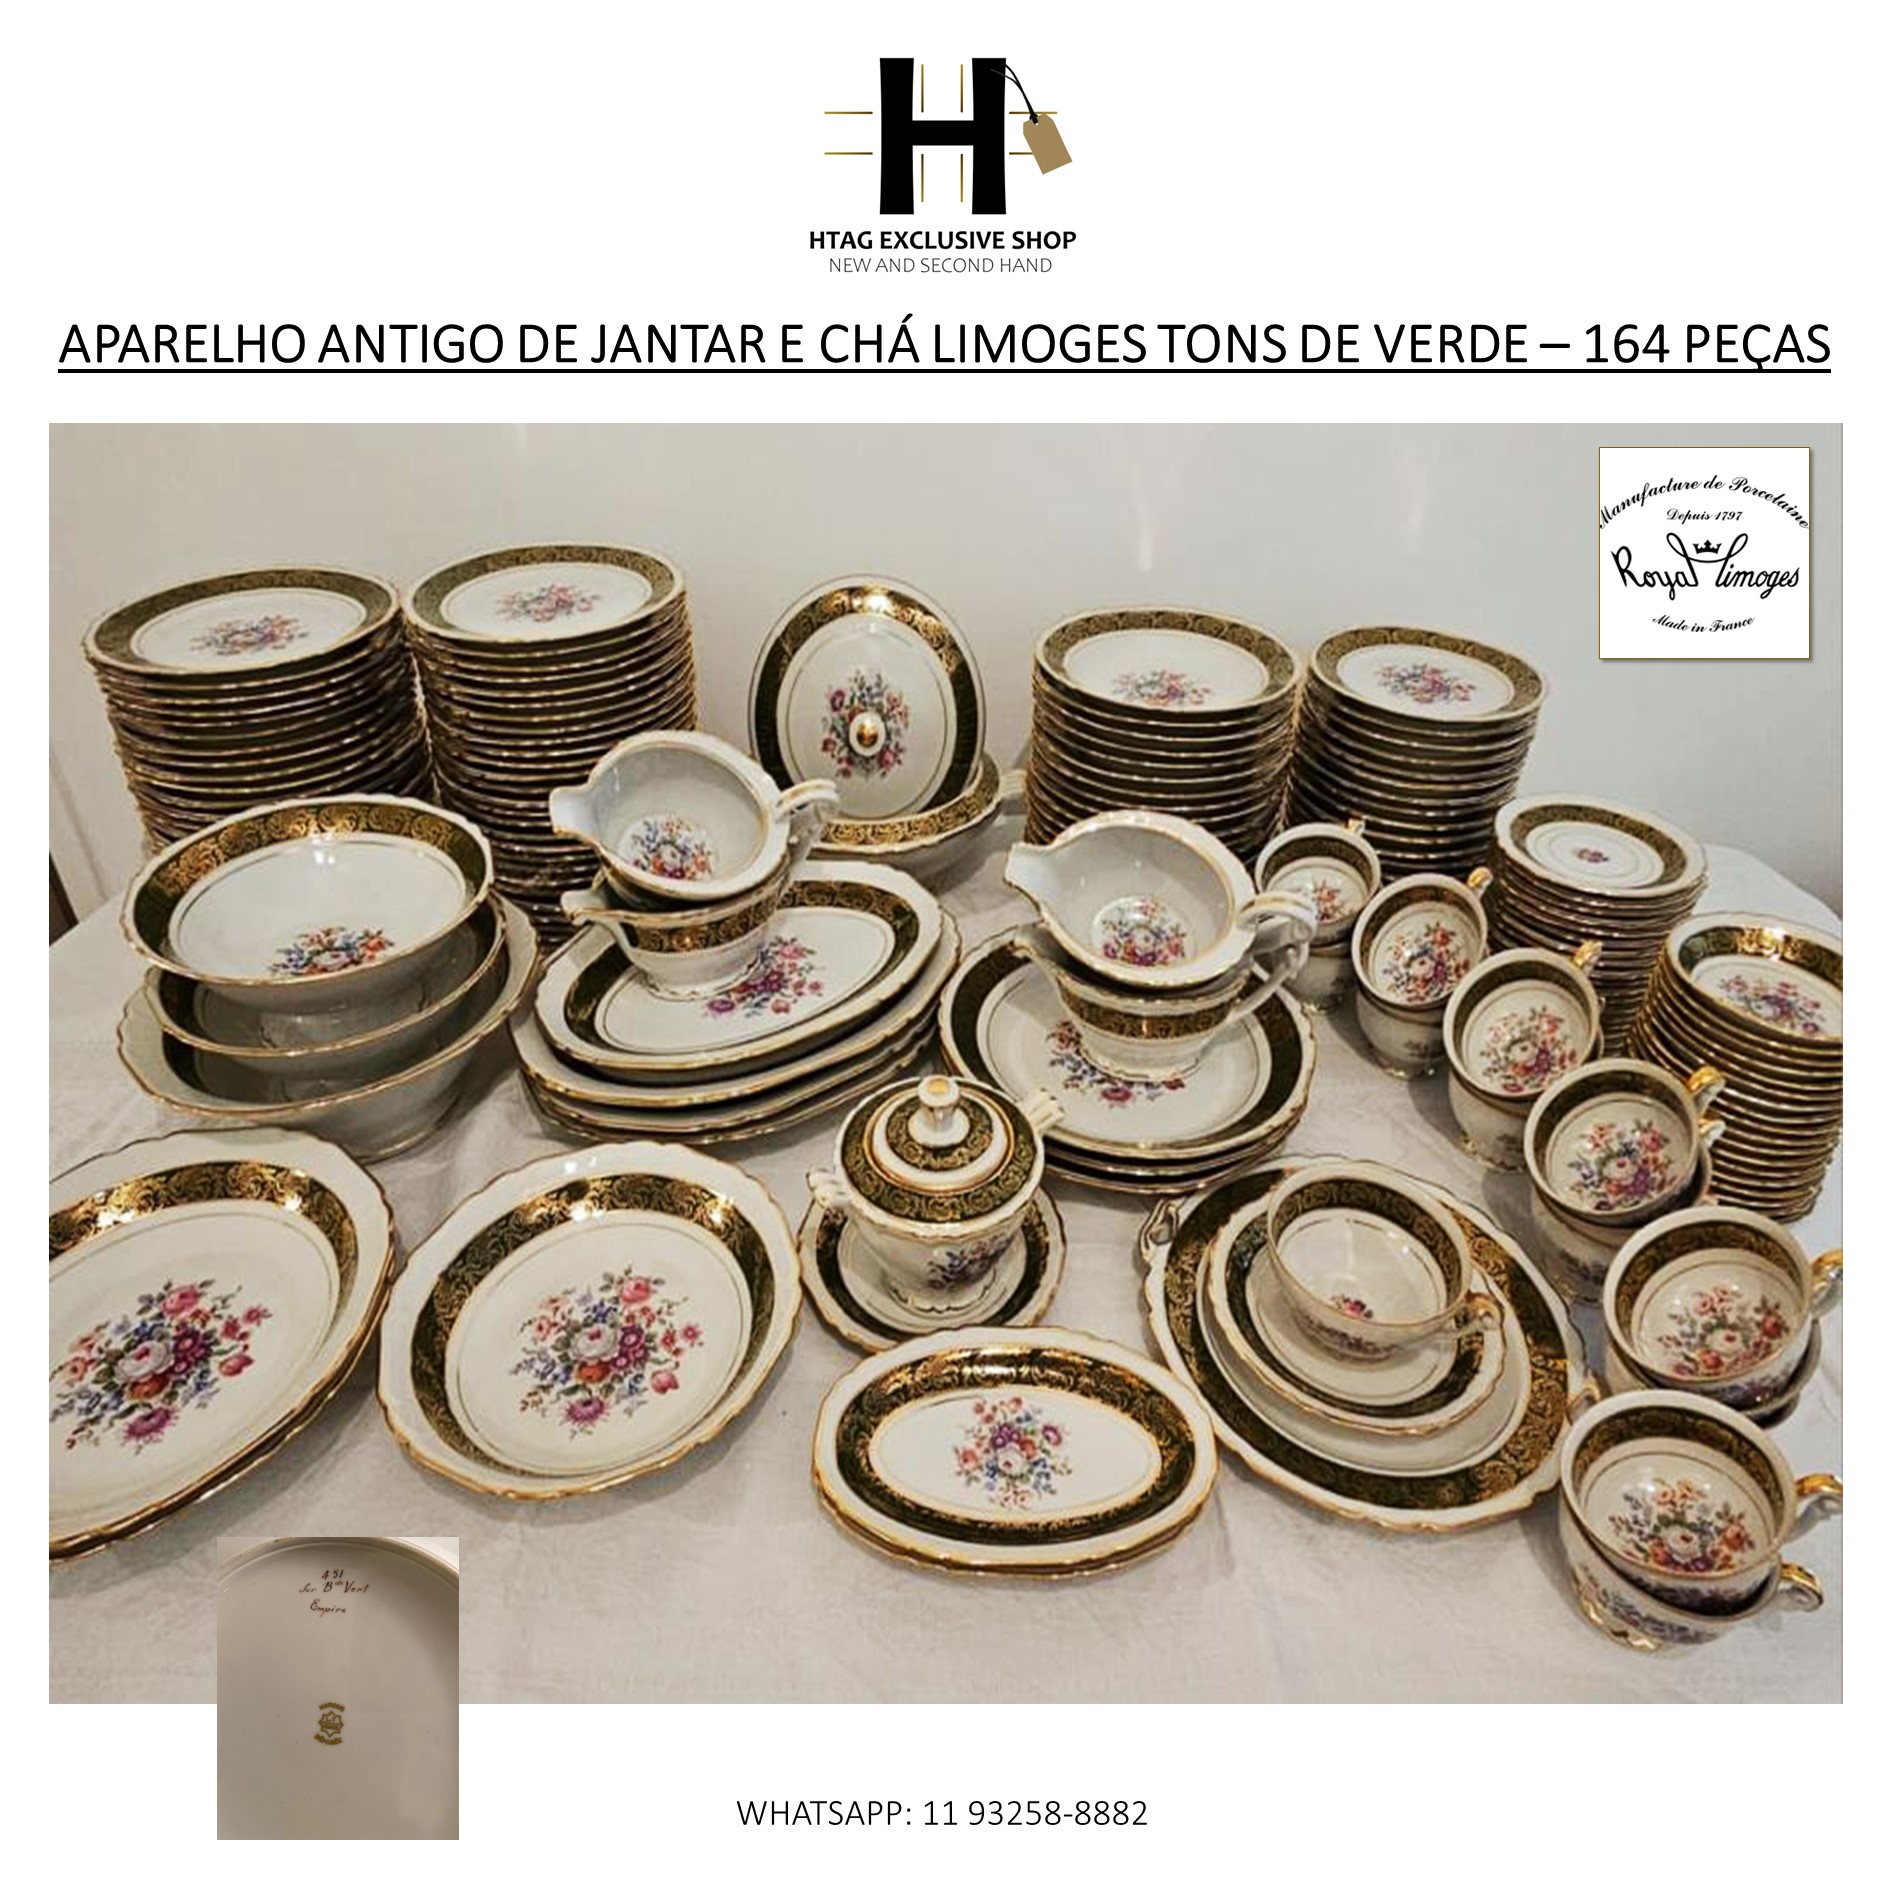 APARELHO ANTIGO COMPLETO DE JANTAR E CHÁ EM PORCELANA LIMOGES - HTAG  EXCLUSIVE SHOP - New & Second Hand